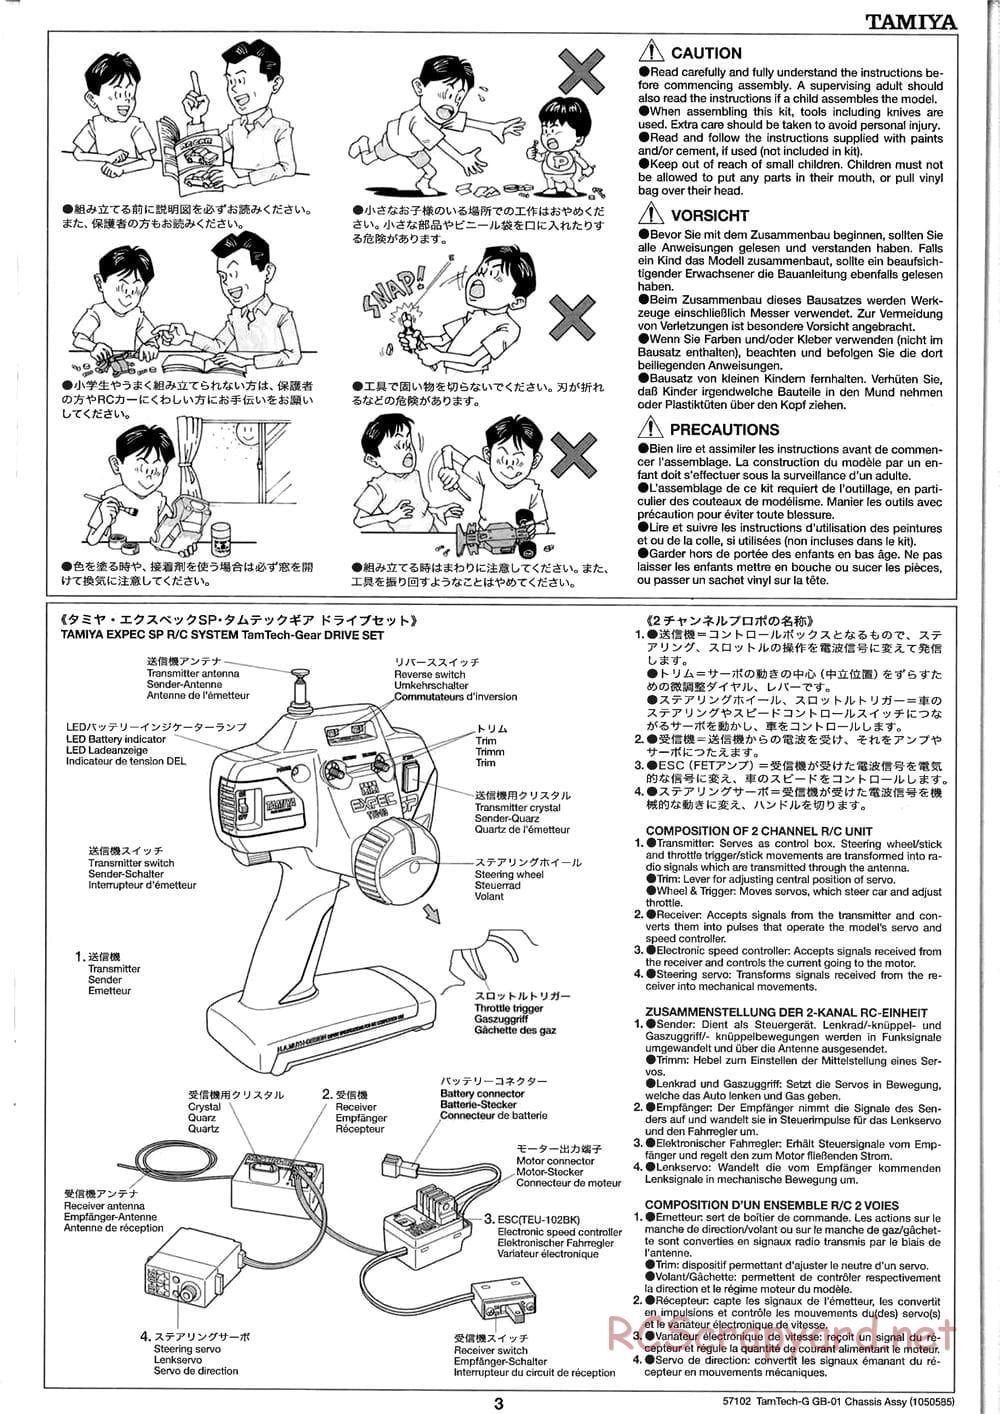 Tamiya - GB-01 Chassis - Manual - Page 3